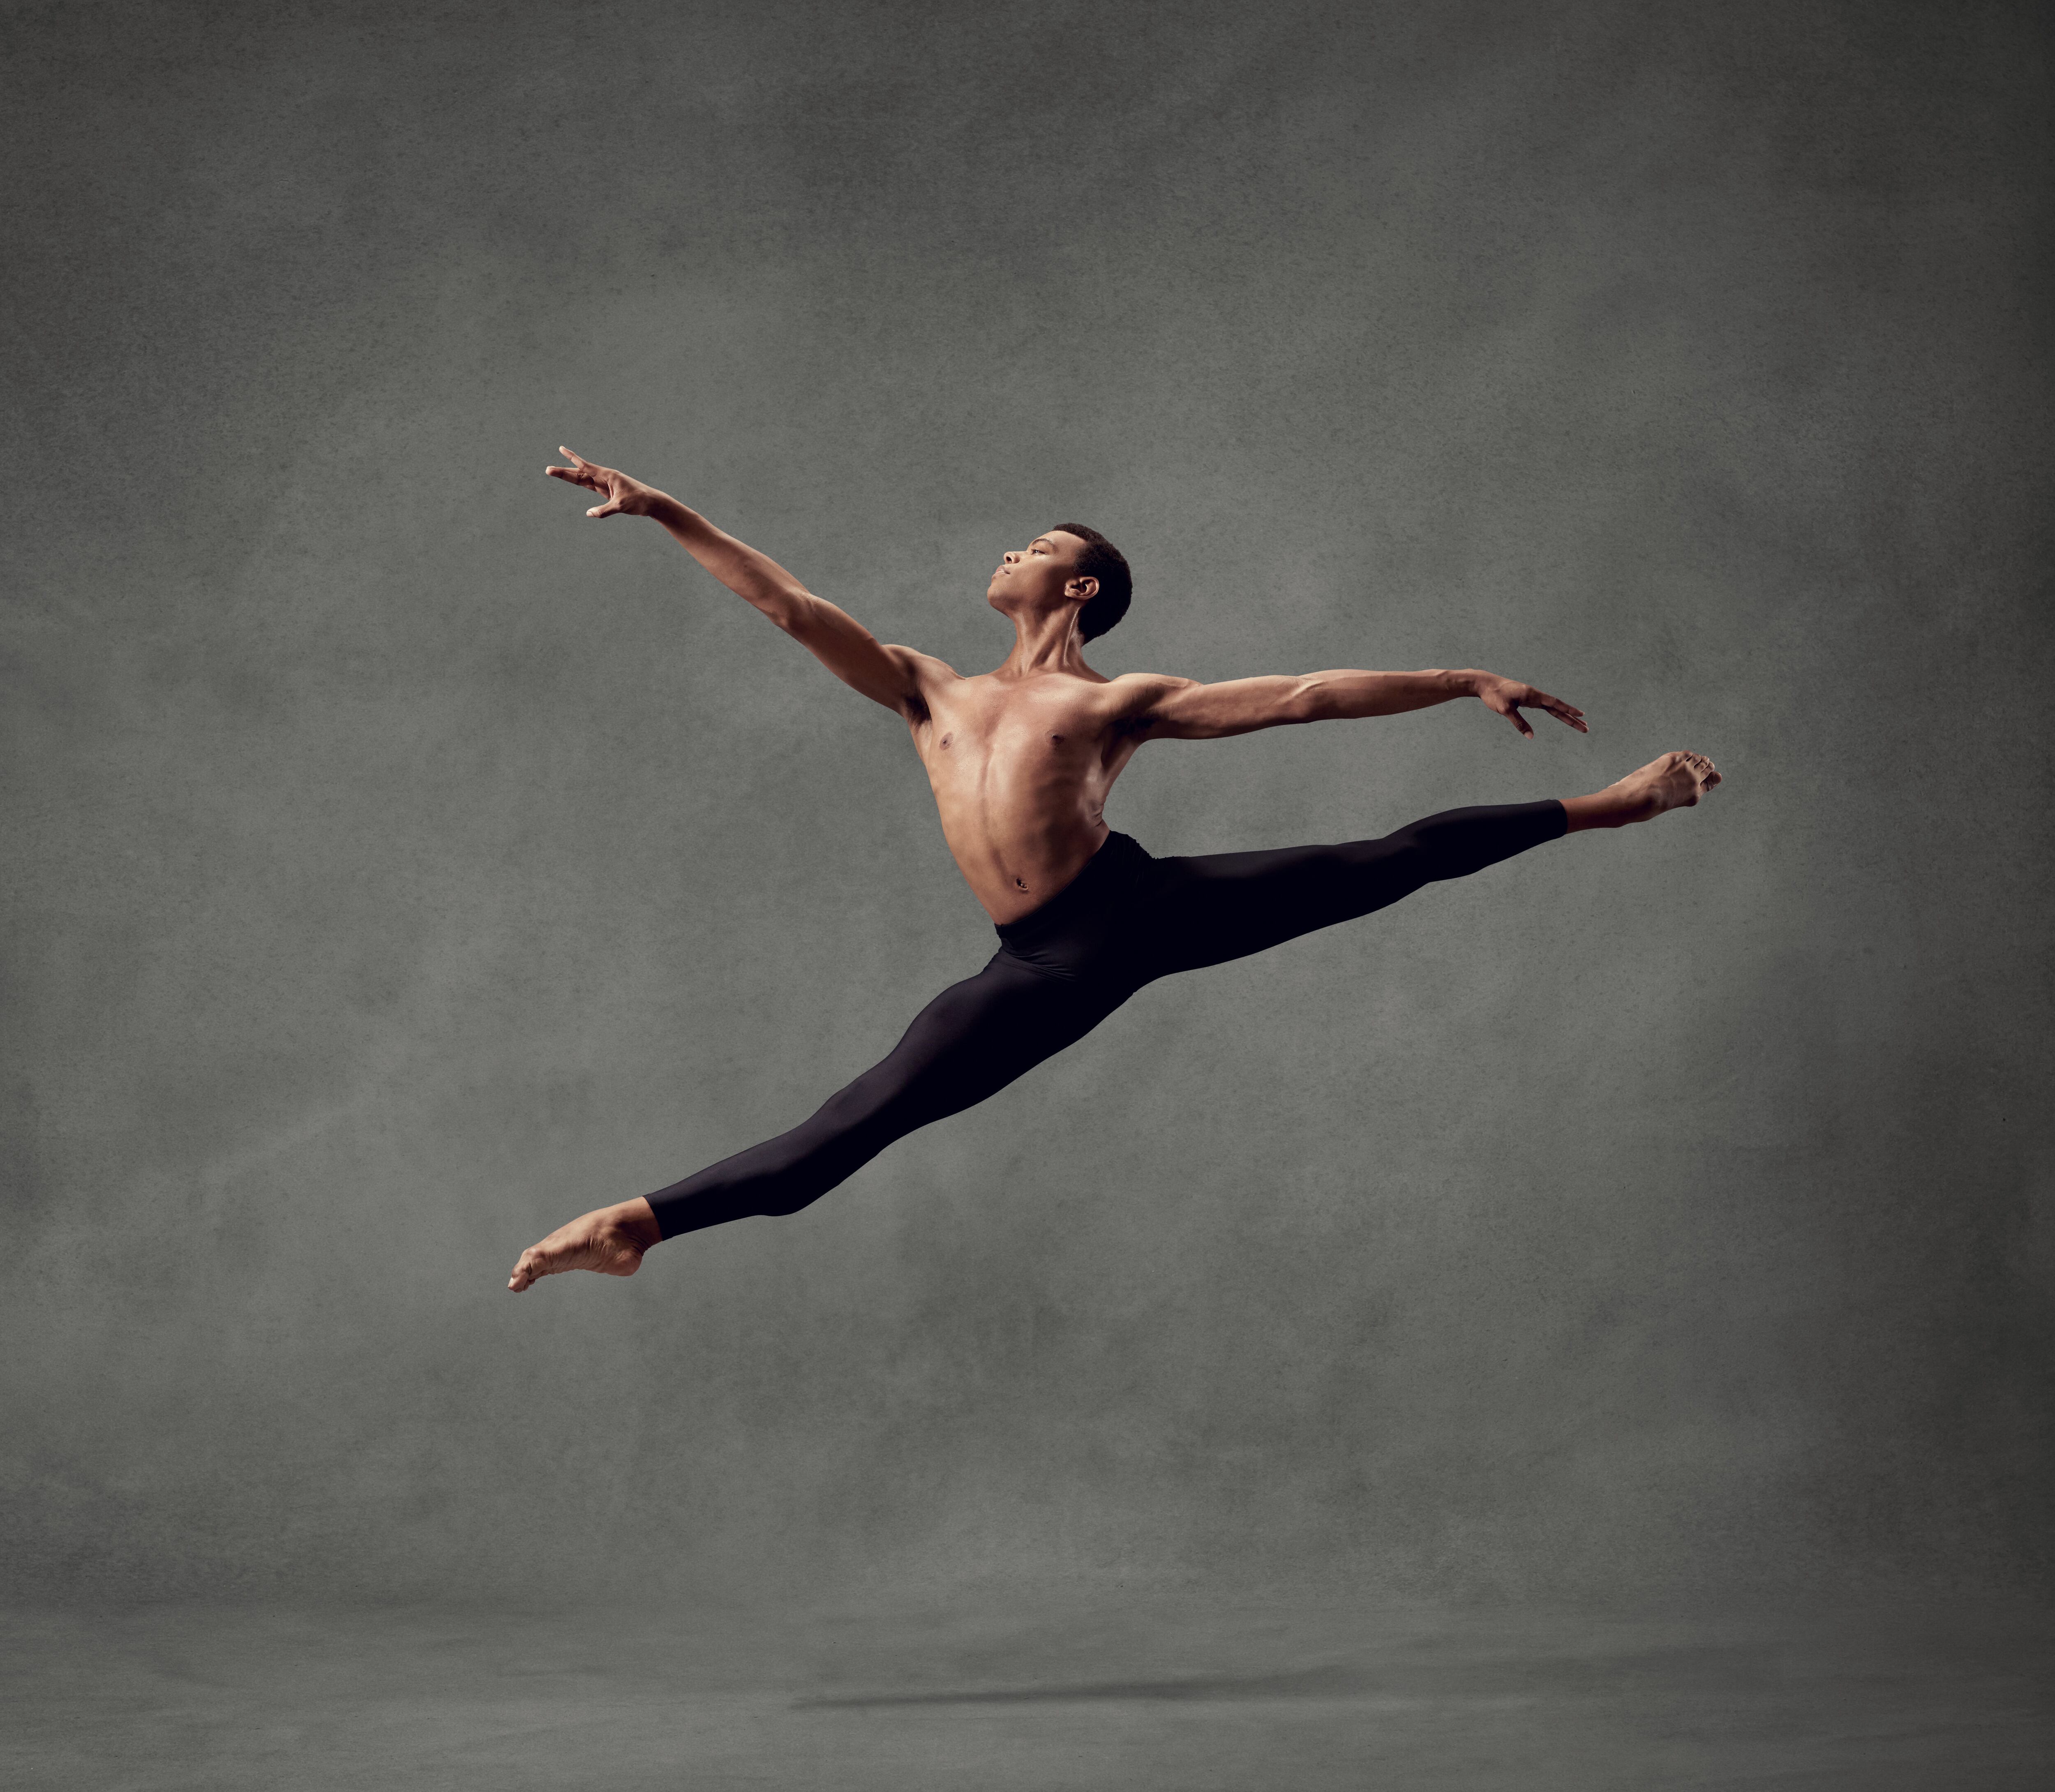 Atlanta Ballet  Atlanta Ballet Announces 2017-18 Company Roster